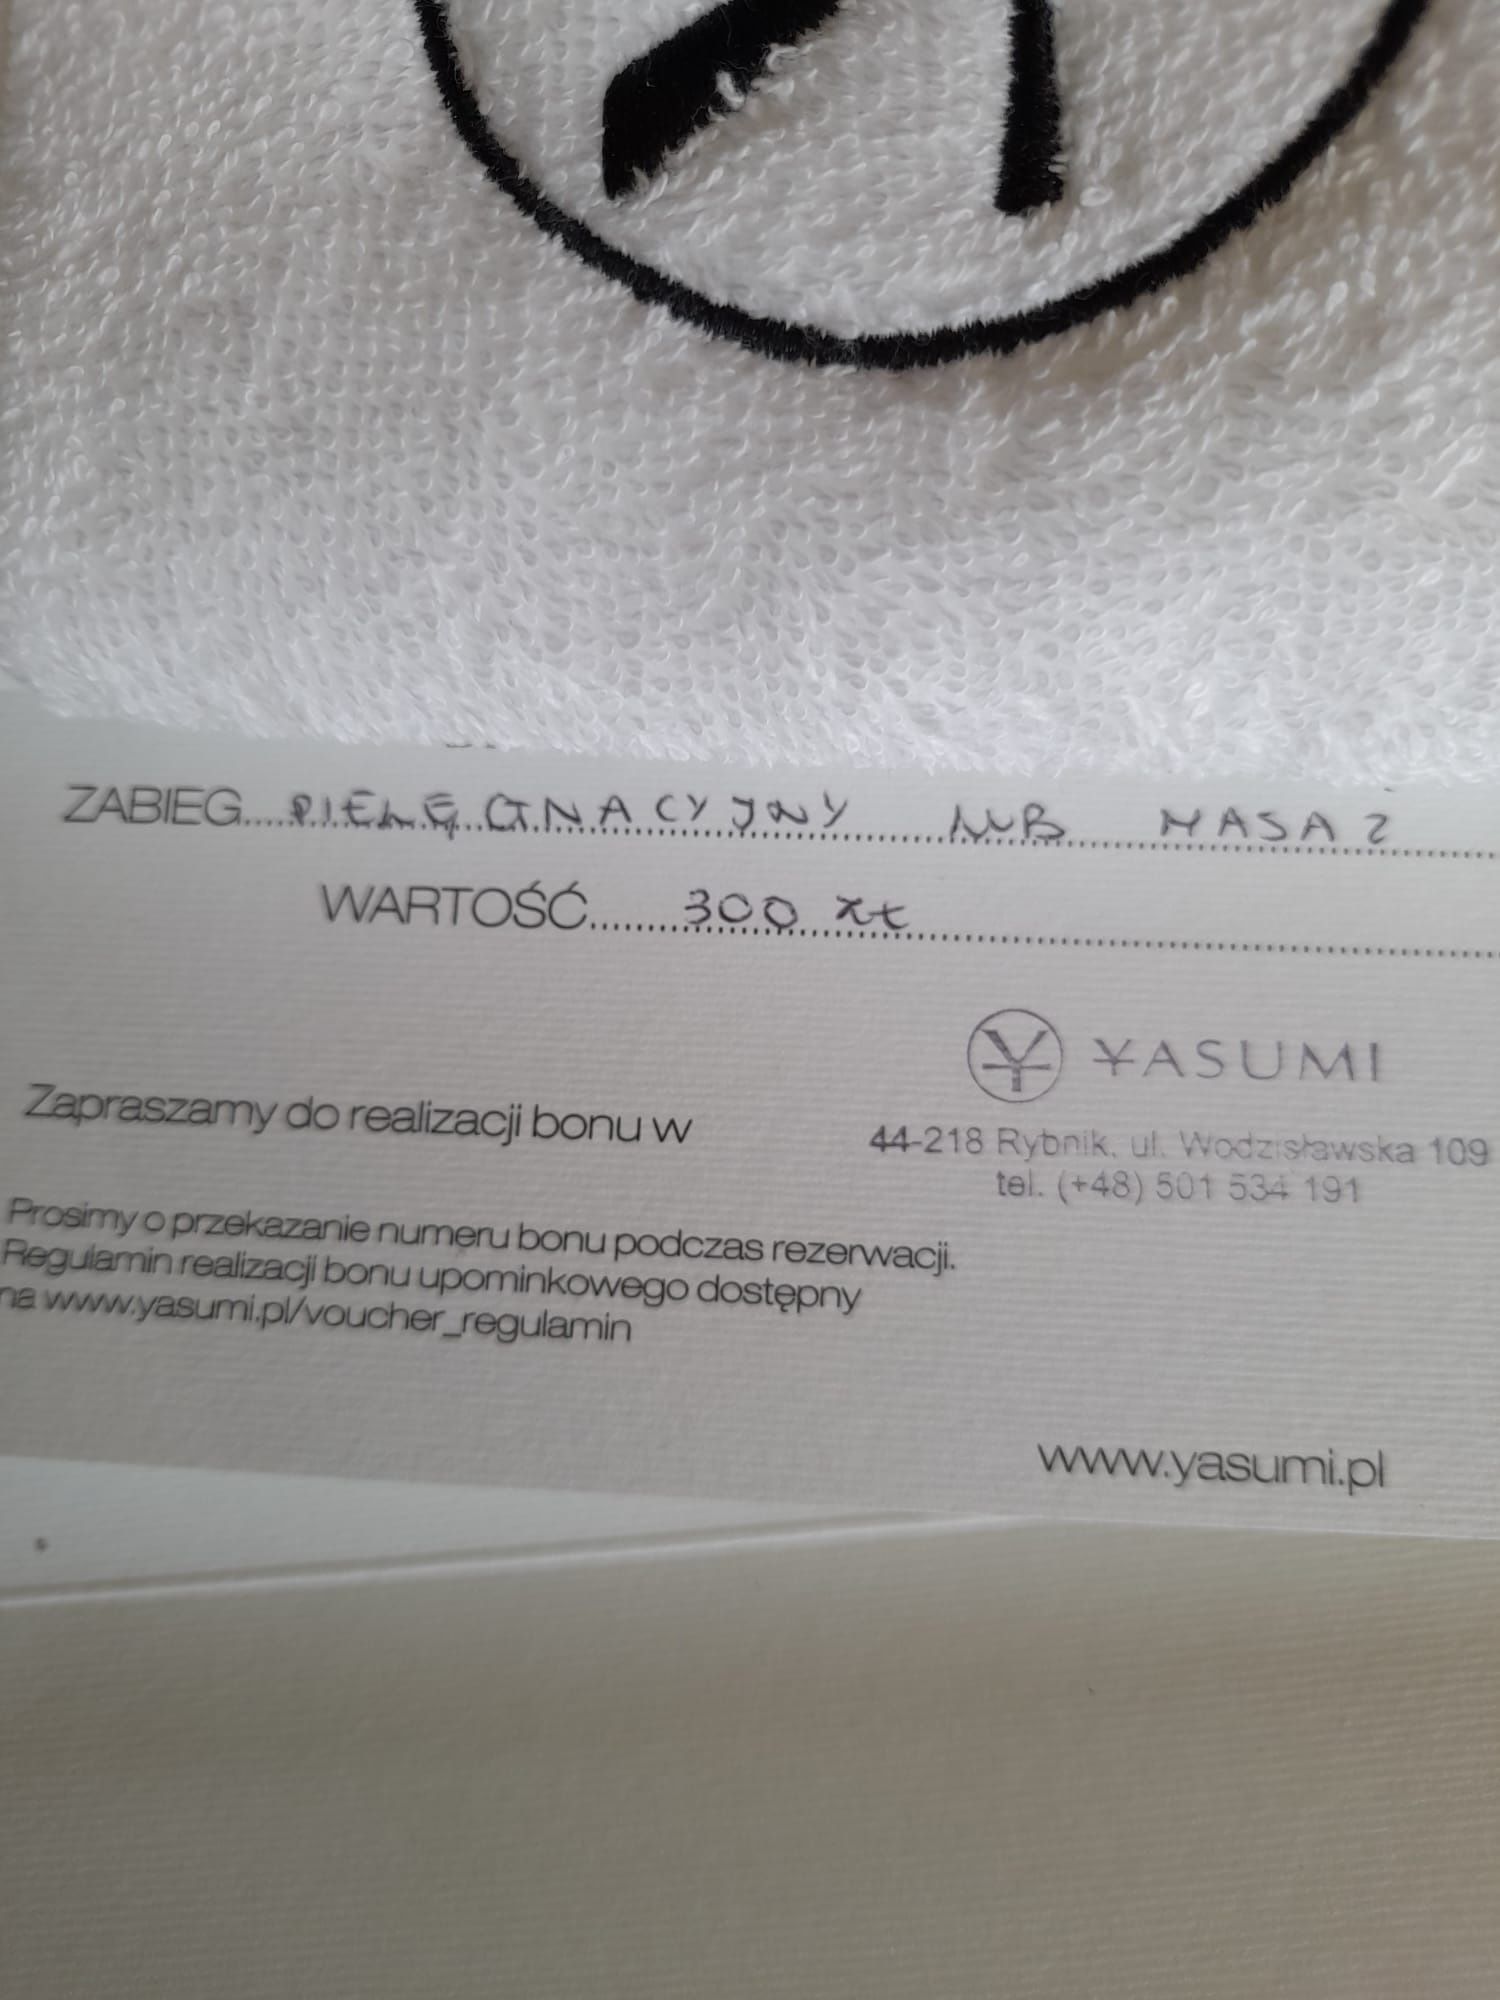 Yasumi bon wartości 300 zł uroda zdrowie